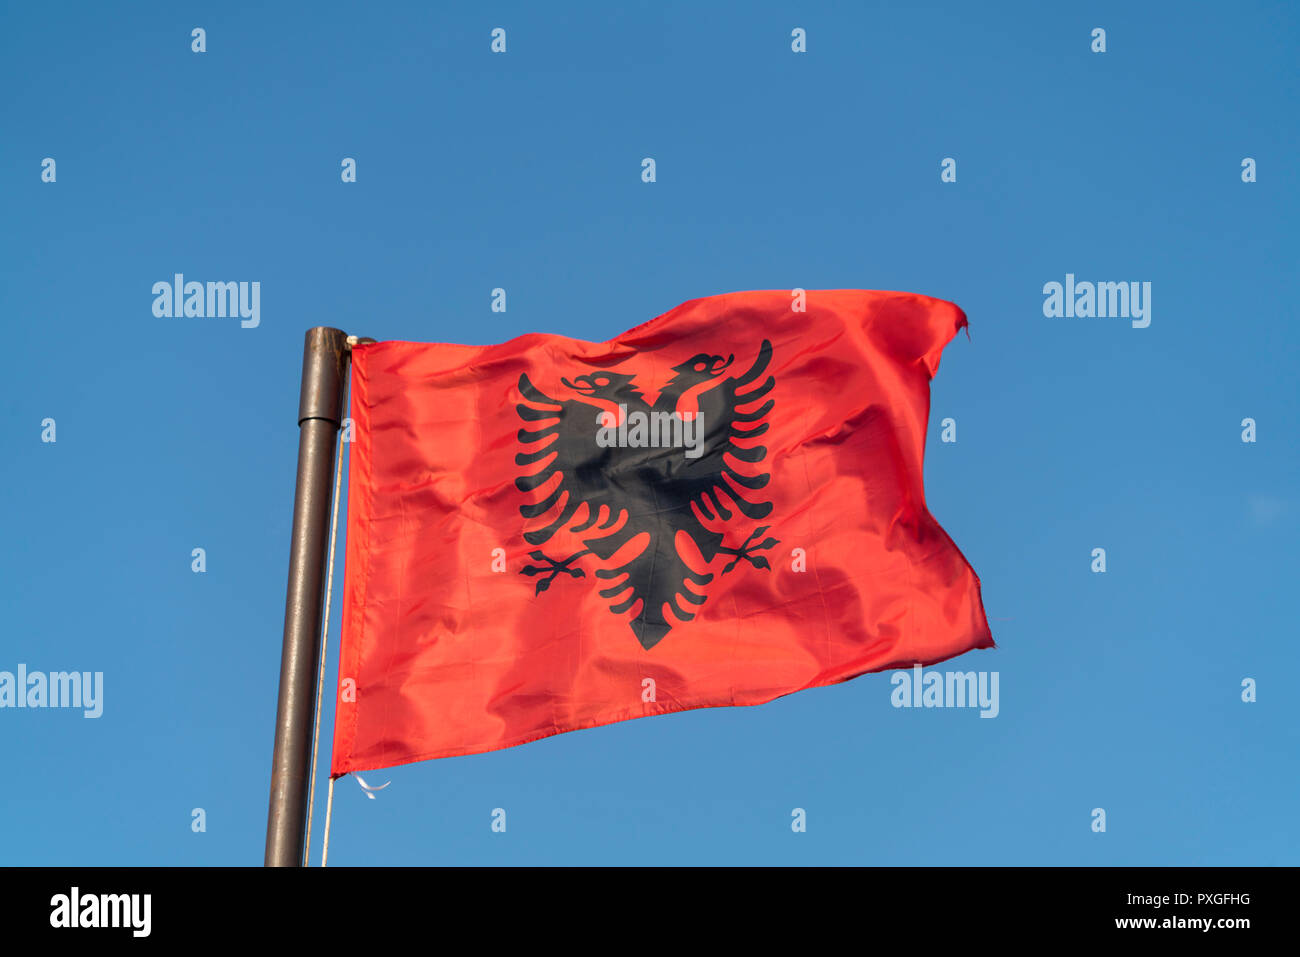 Flagge von Albanien, Europa | Flag of Albania, Europe Stock Photo